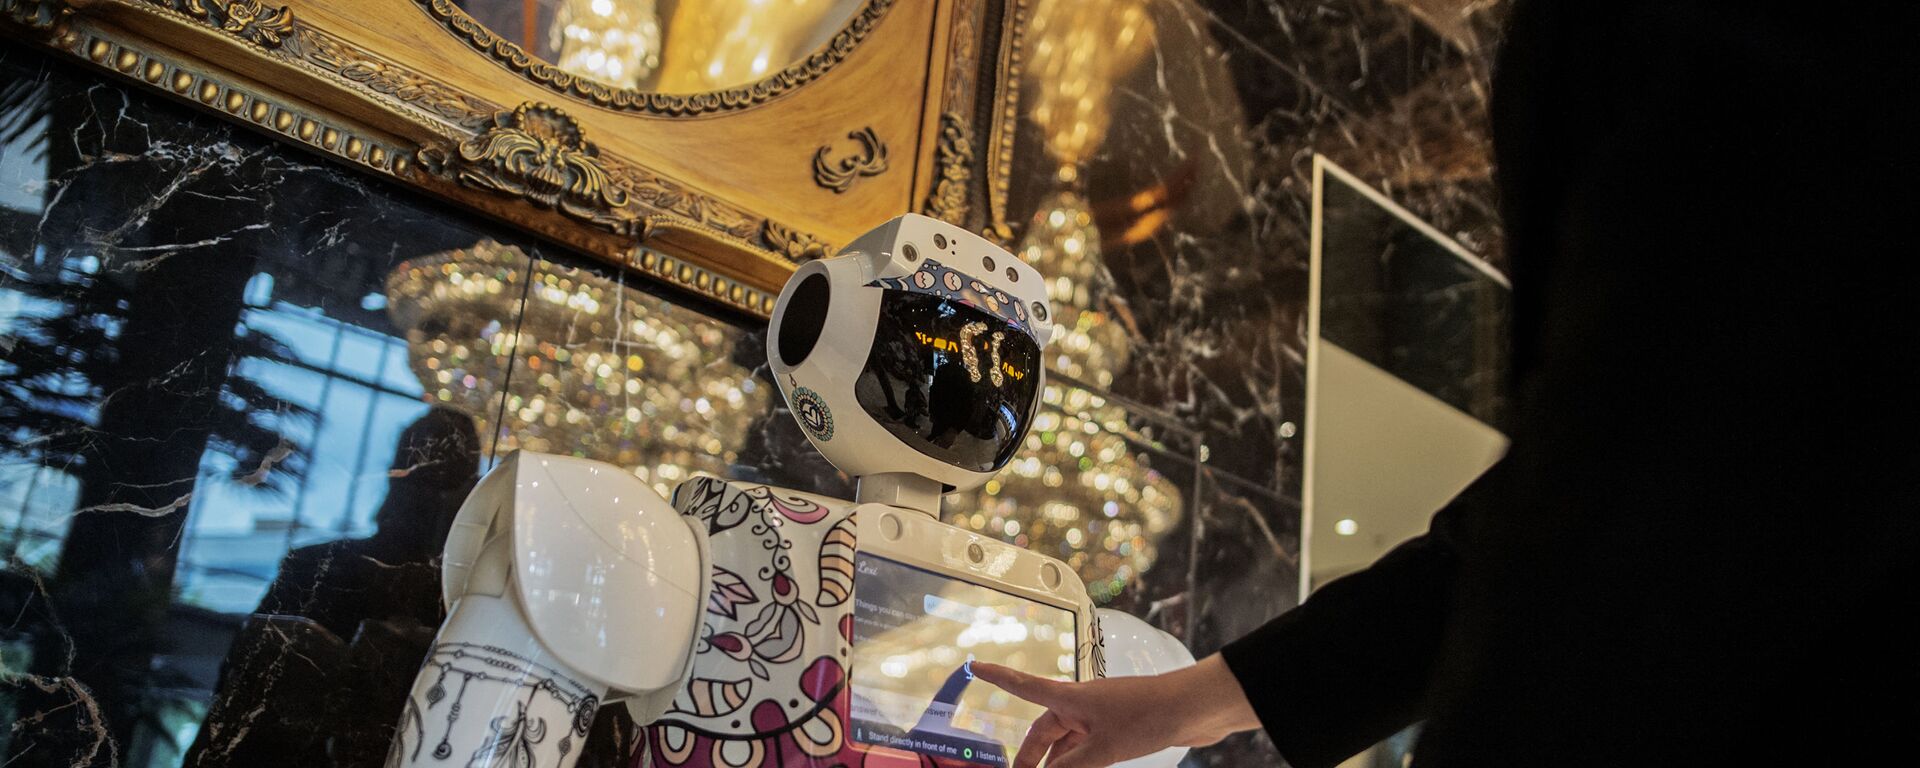 موظف استقبال يطلب معلومات من روبوت من قبل شركة CTRL Robotics في قاعة فندق سكاي في ساندتون، جنوب إفريقيا، 29 يناير 2021. - سبوتنيك عربي, 1920, 20.02.2022